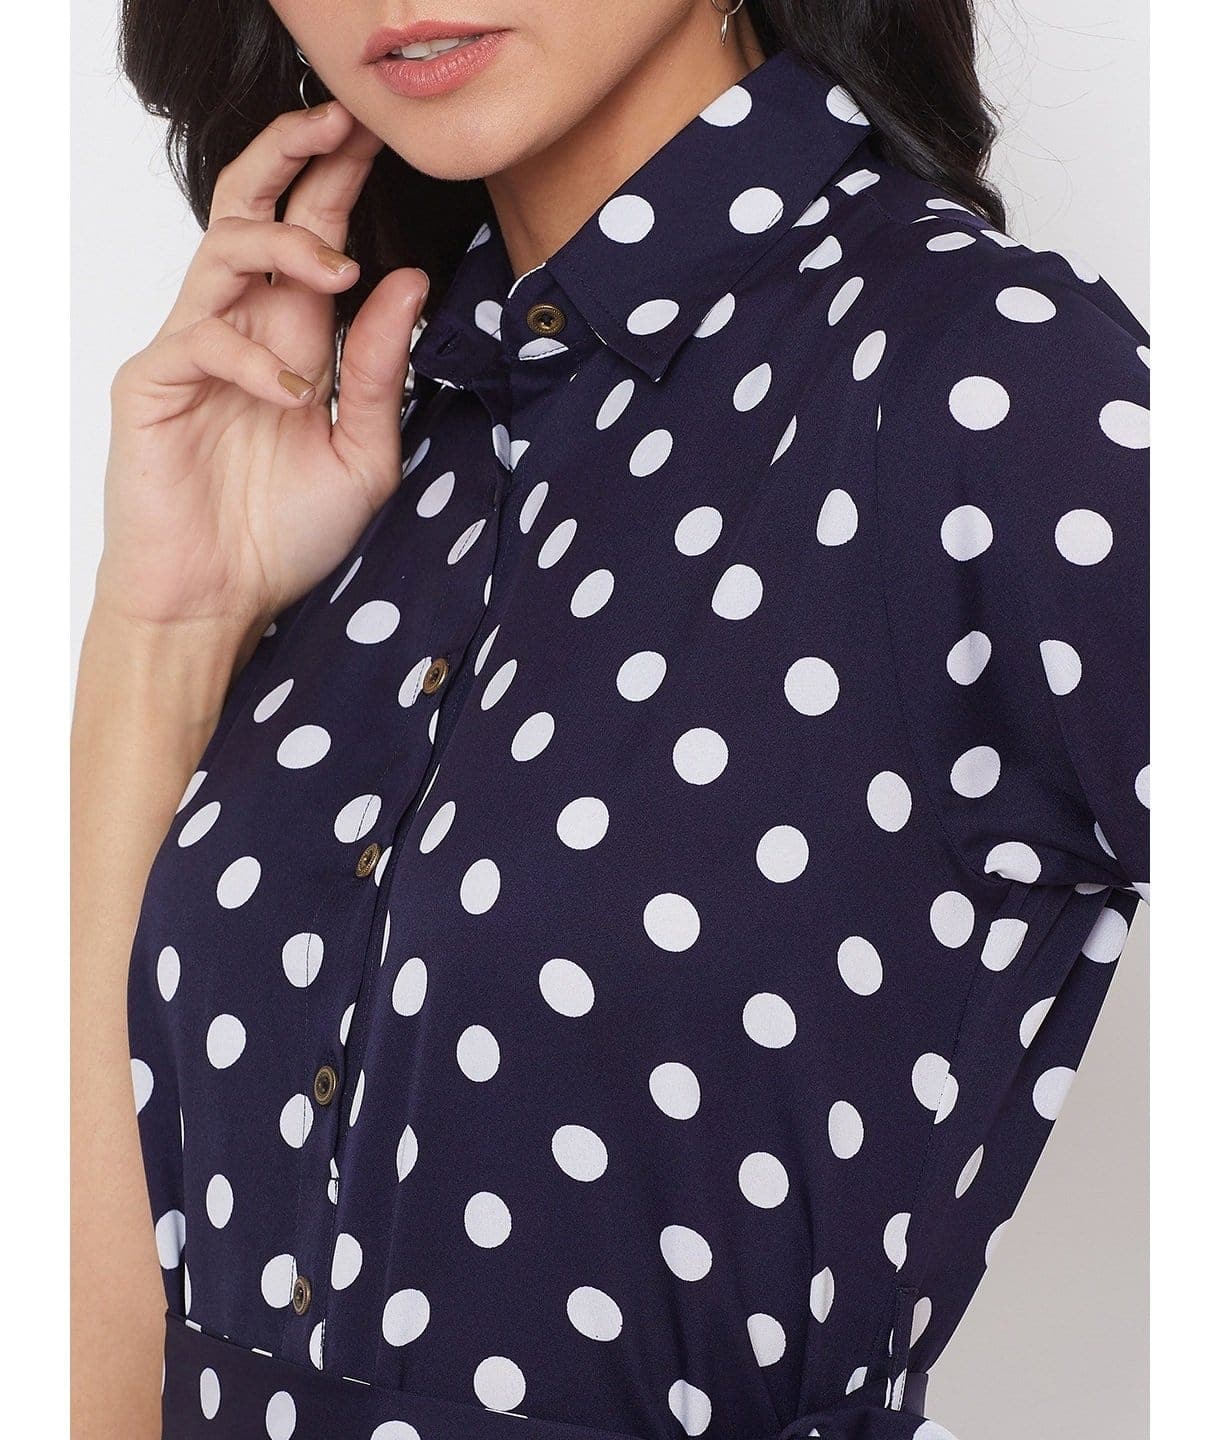 Collar Buttoned Down Shirt Maxi Dress - Uptownie